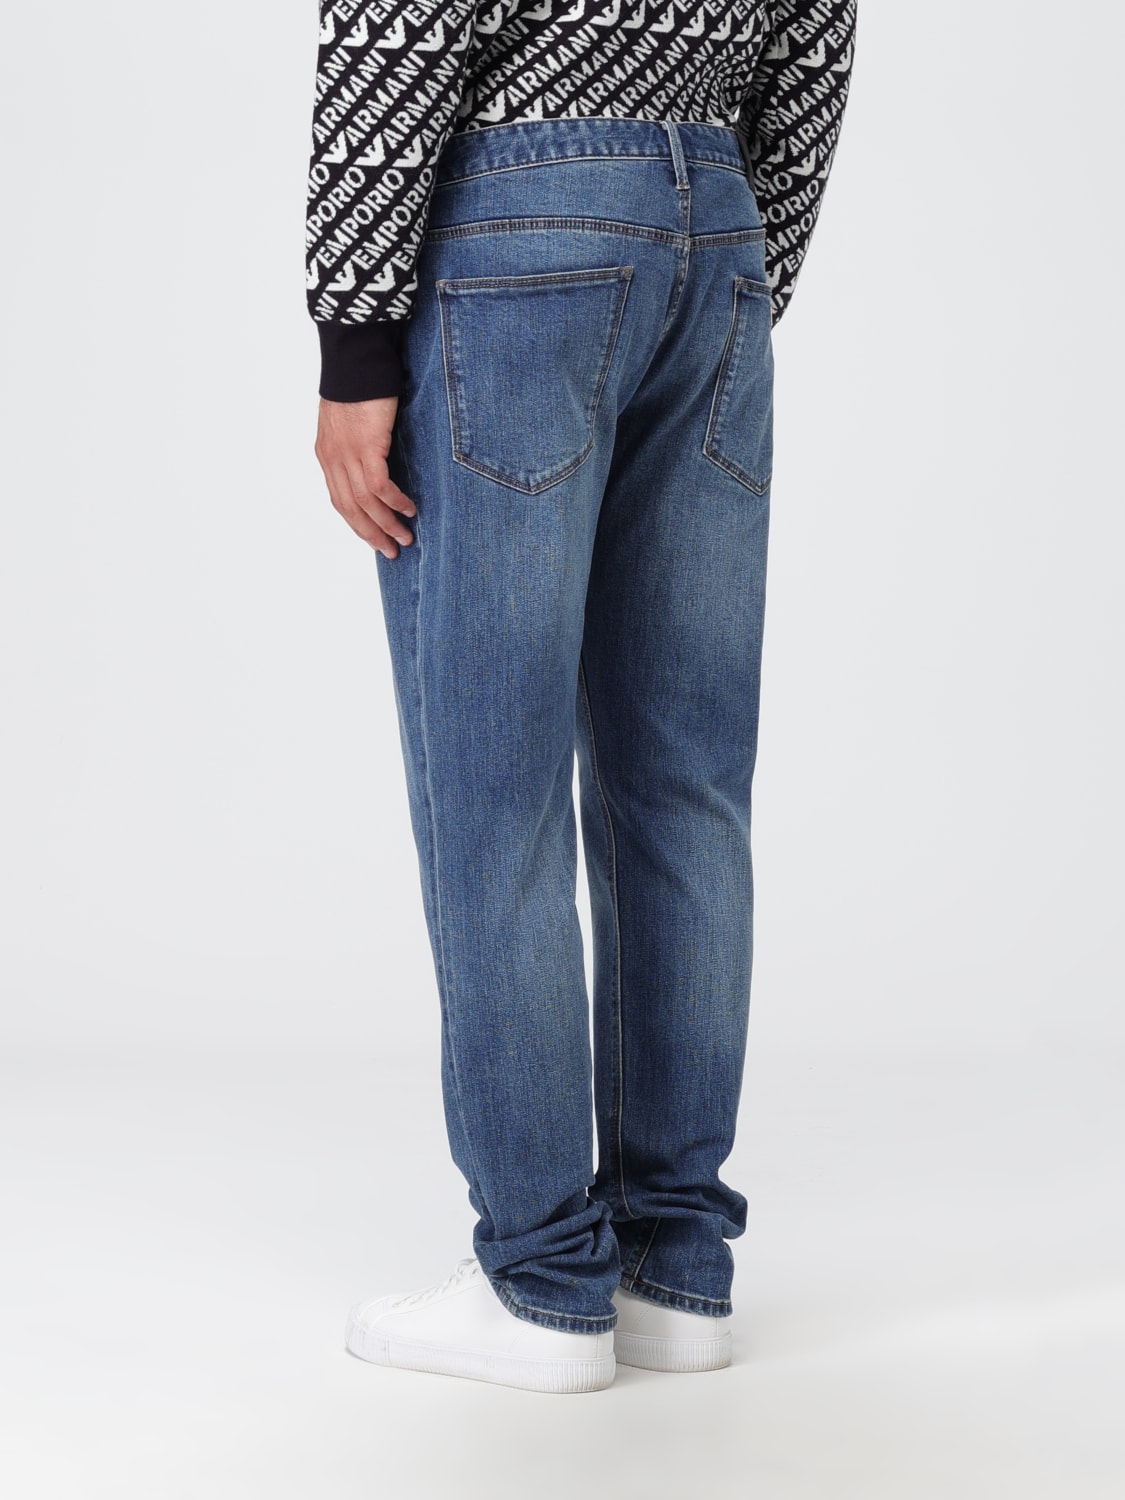 EMPORIO ARMANI: in denim - Denim | Emporio Armani jeans 6R1J061DRHZ online at GIGLIO.COM